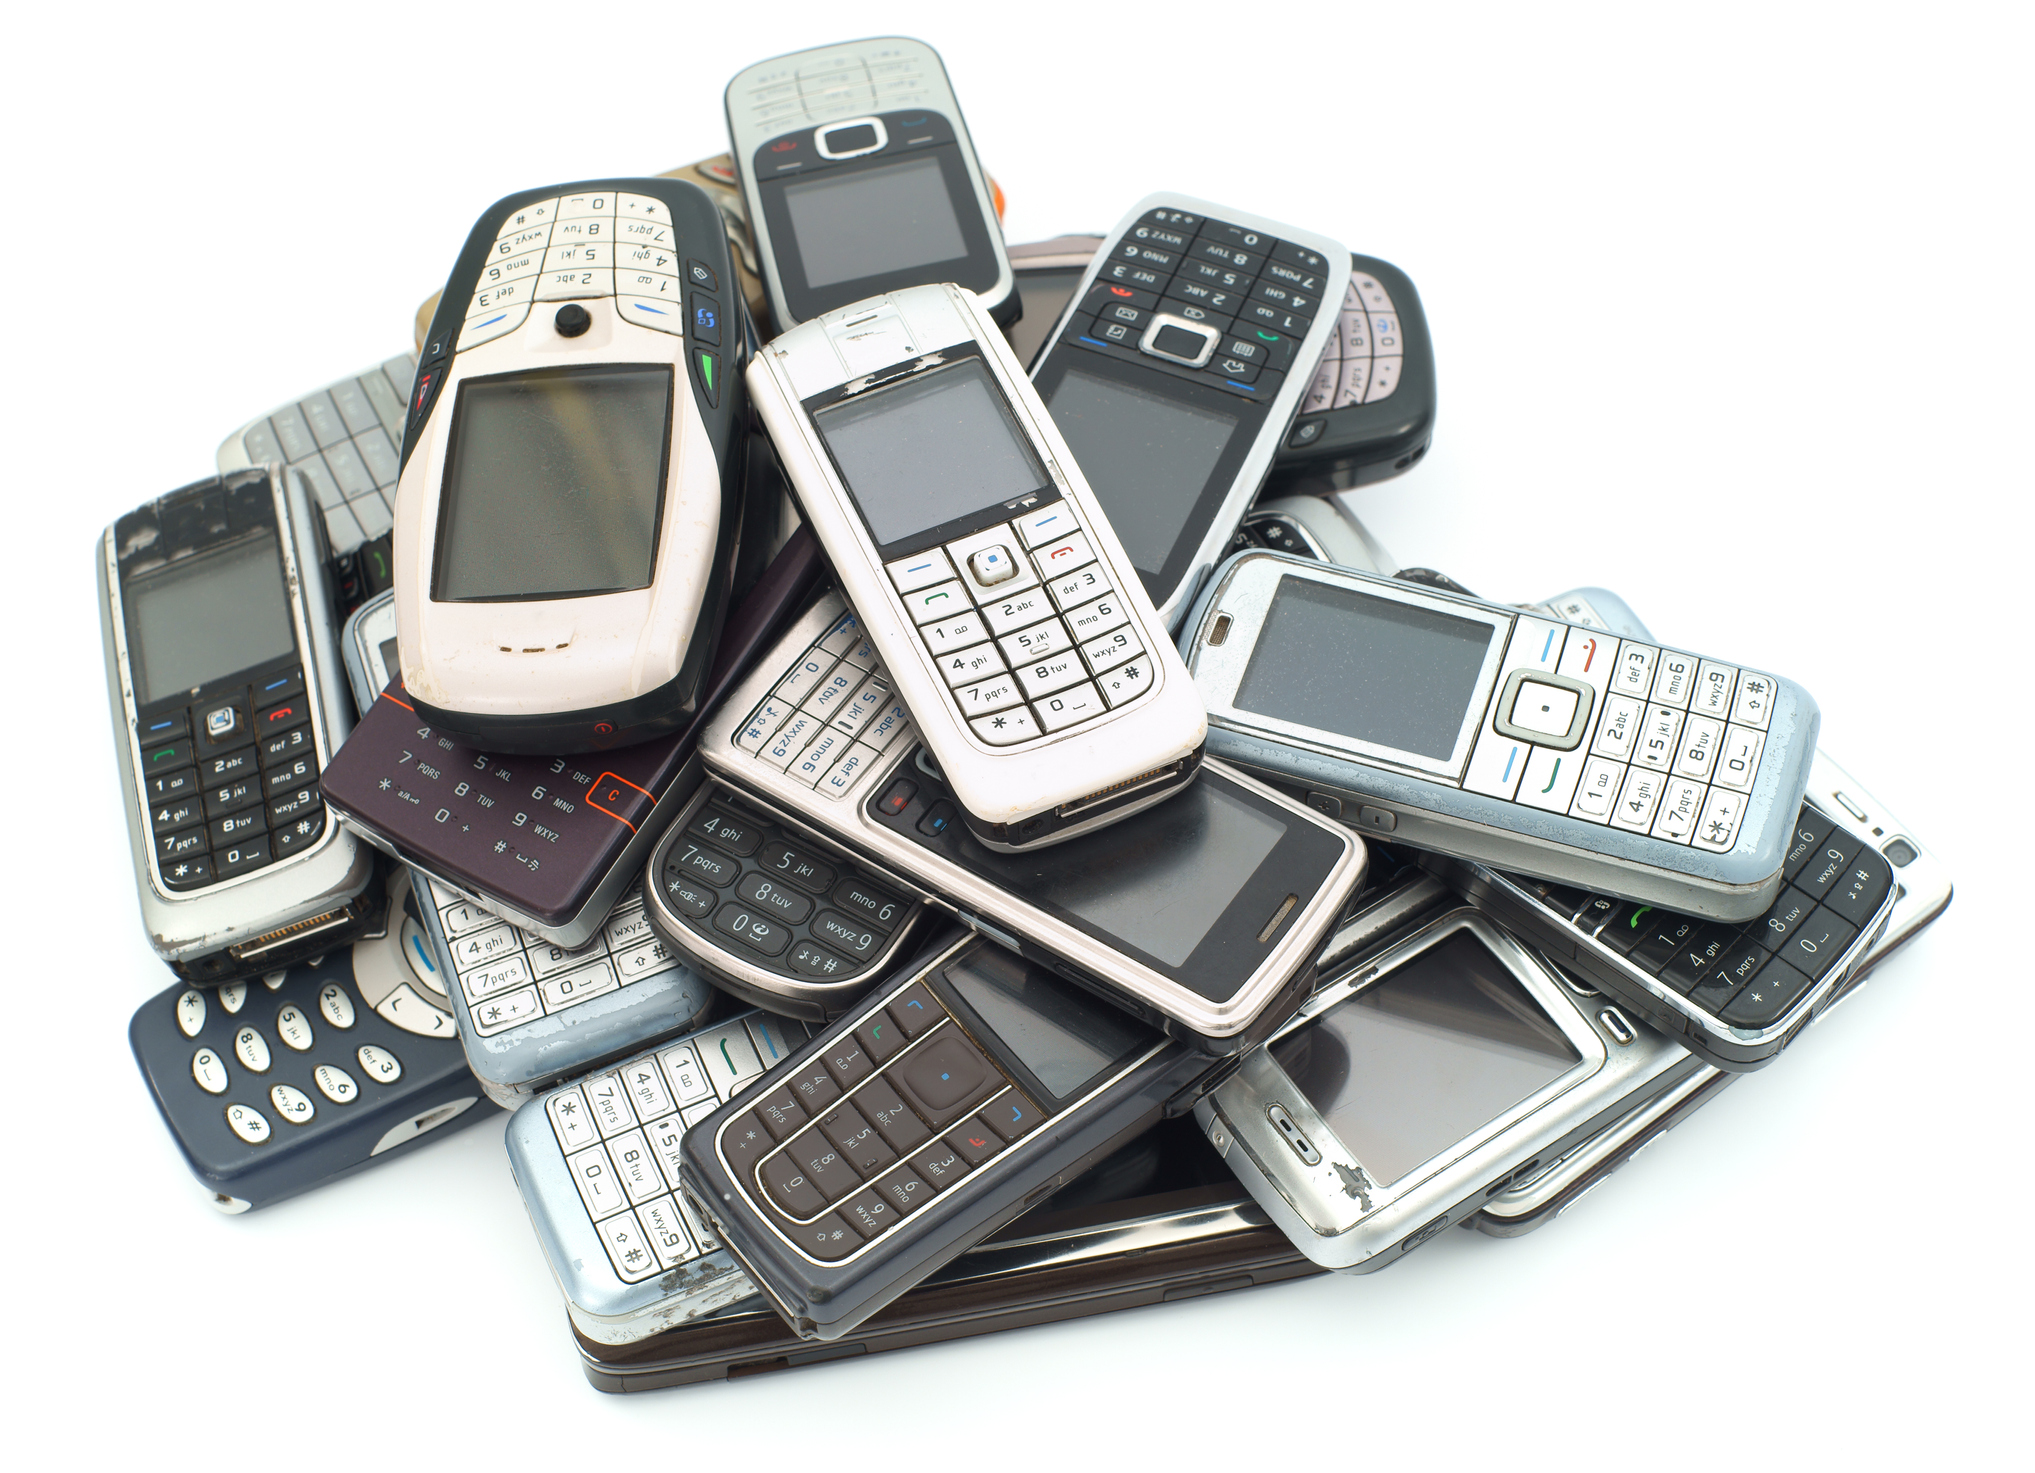 Nokia: ¿Los celulares antiguos de la marca eran muy resistentes o